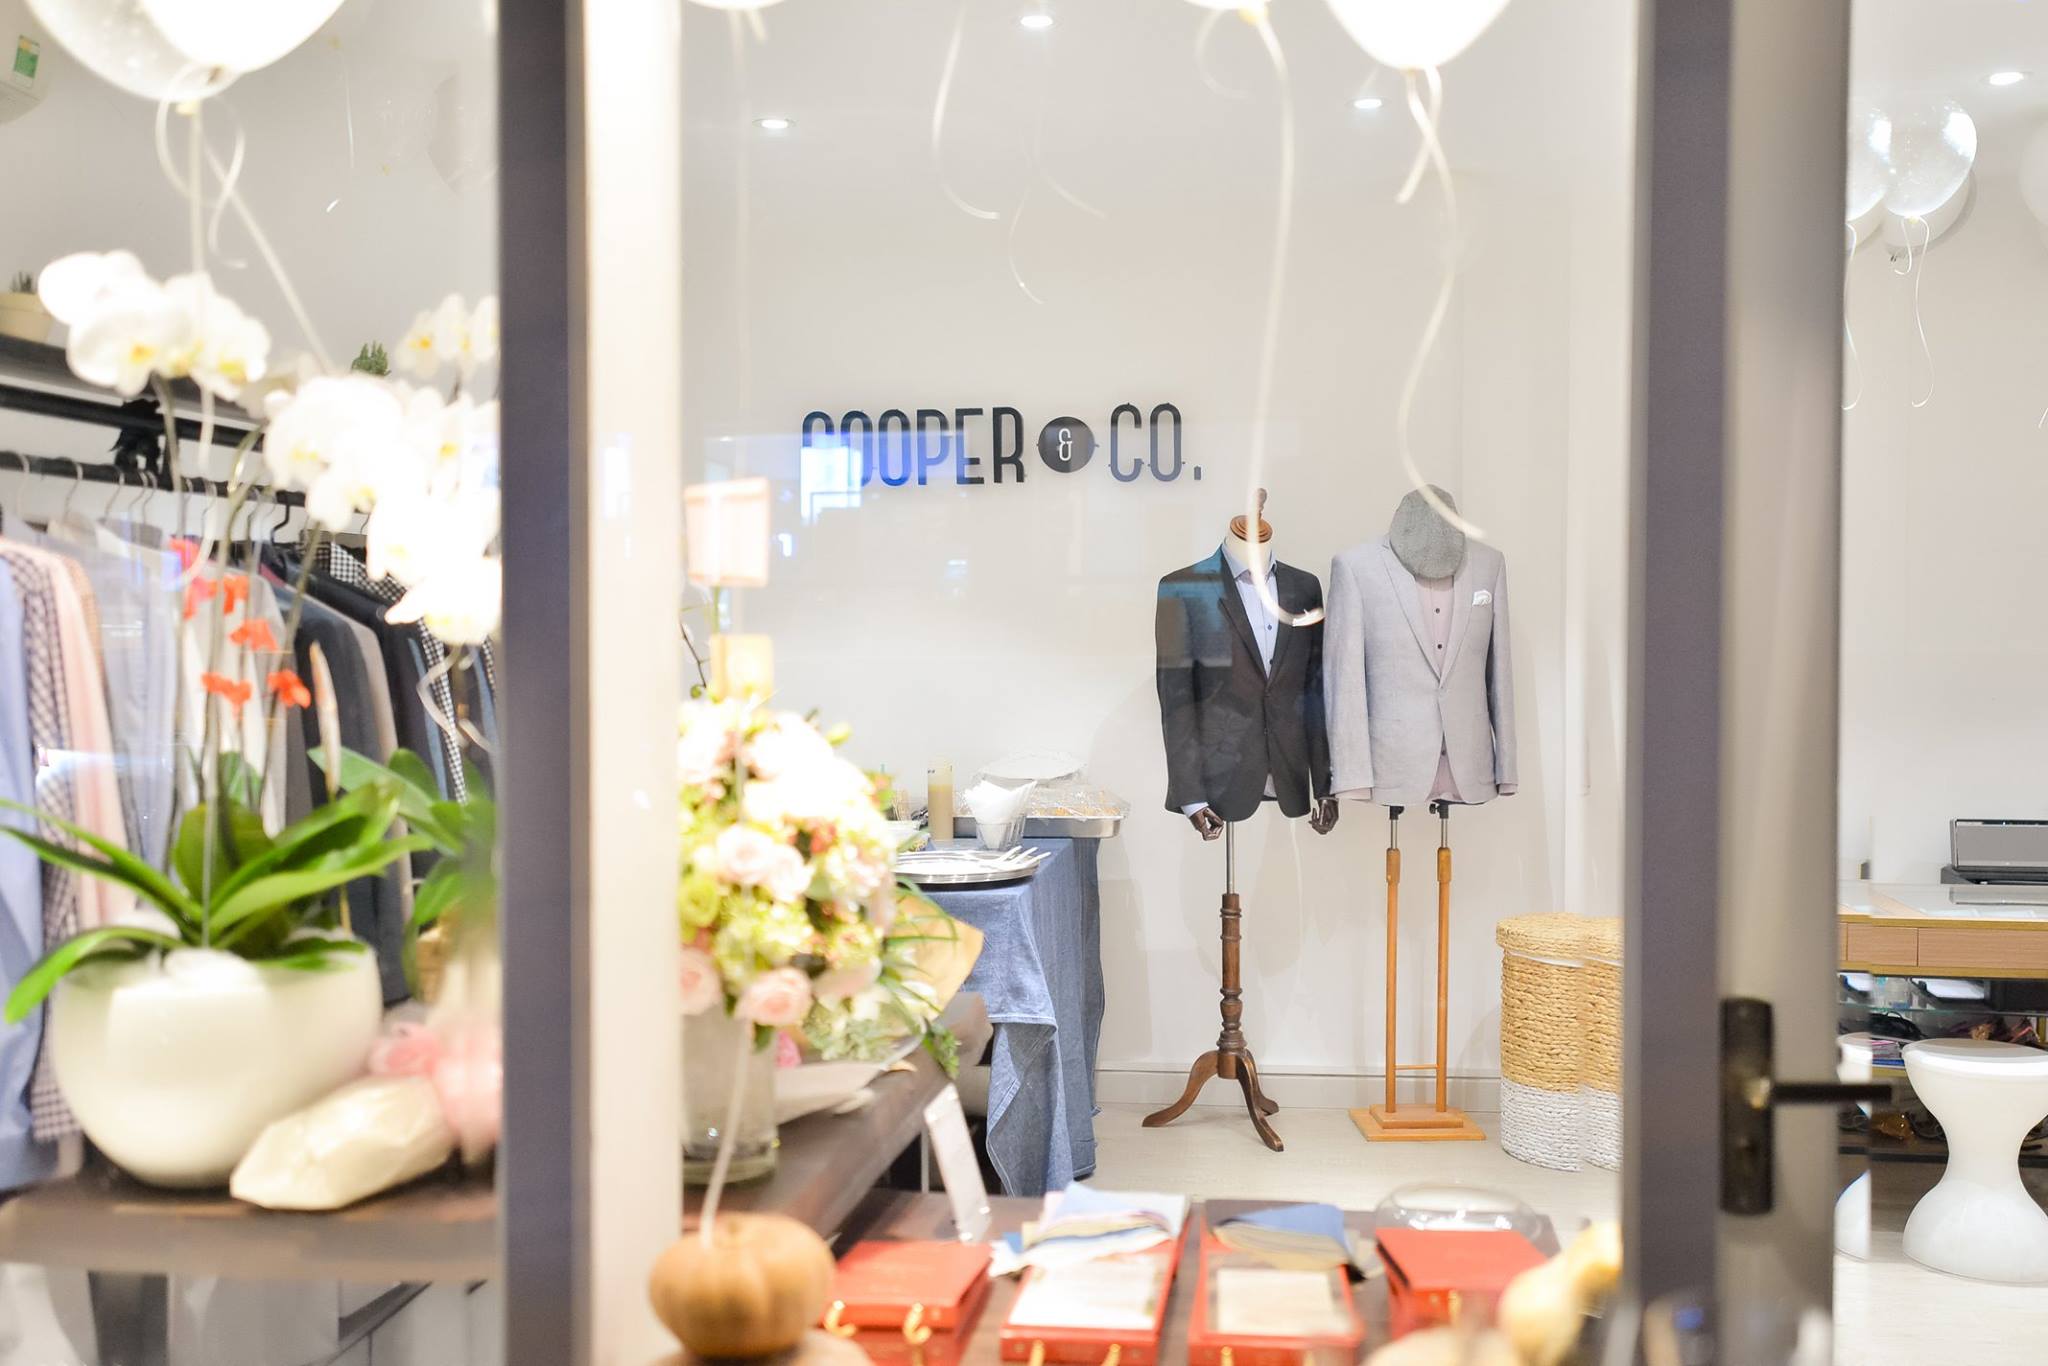 Cooper & Co. là một boutique chuyên về suit may đo (bespoke) dành cho nam giới